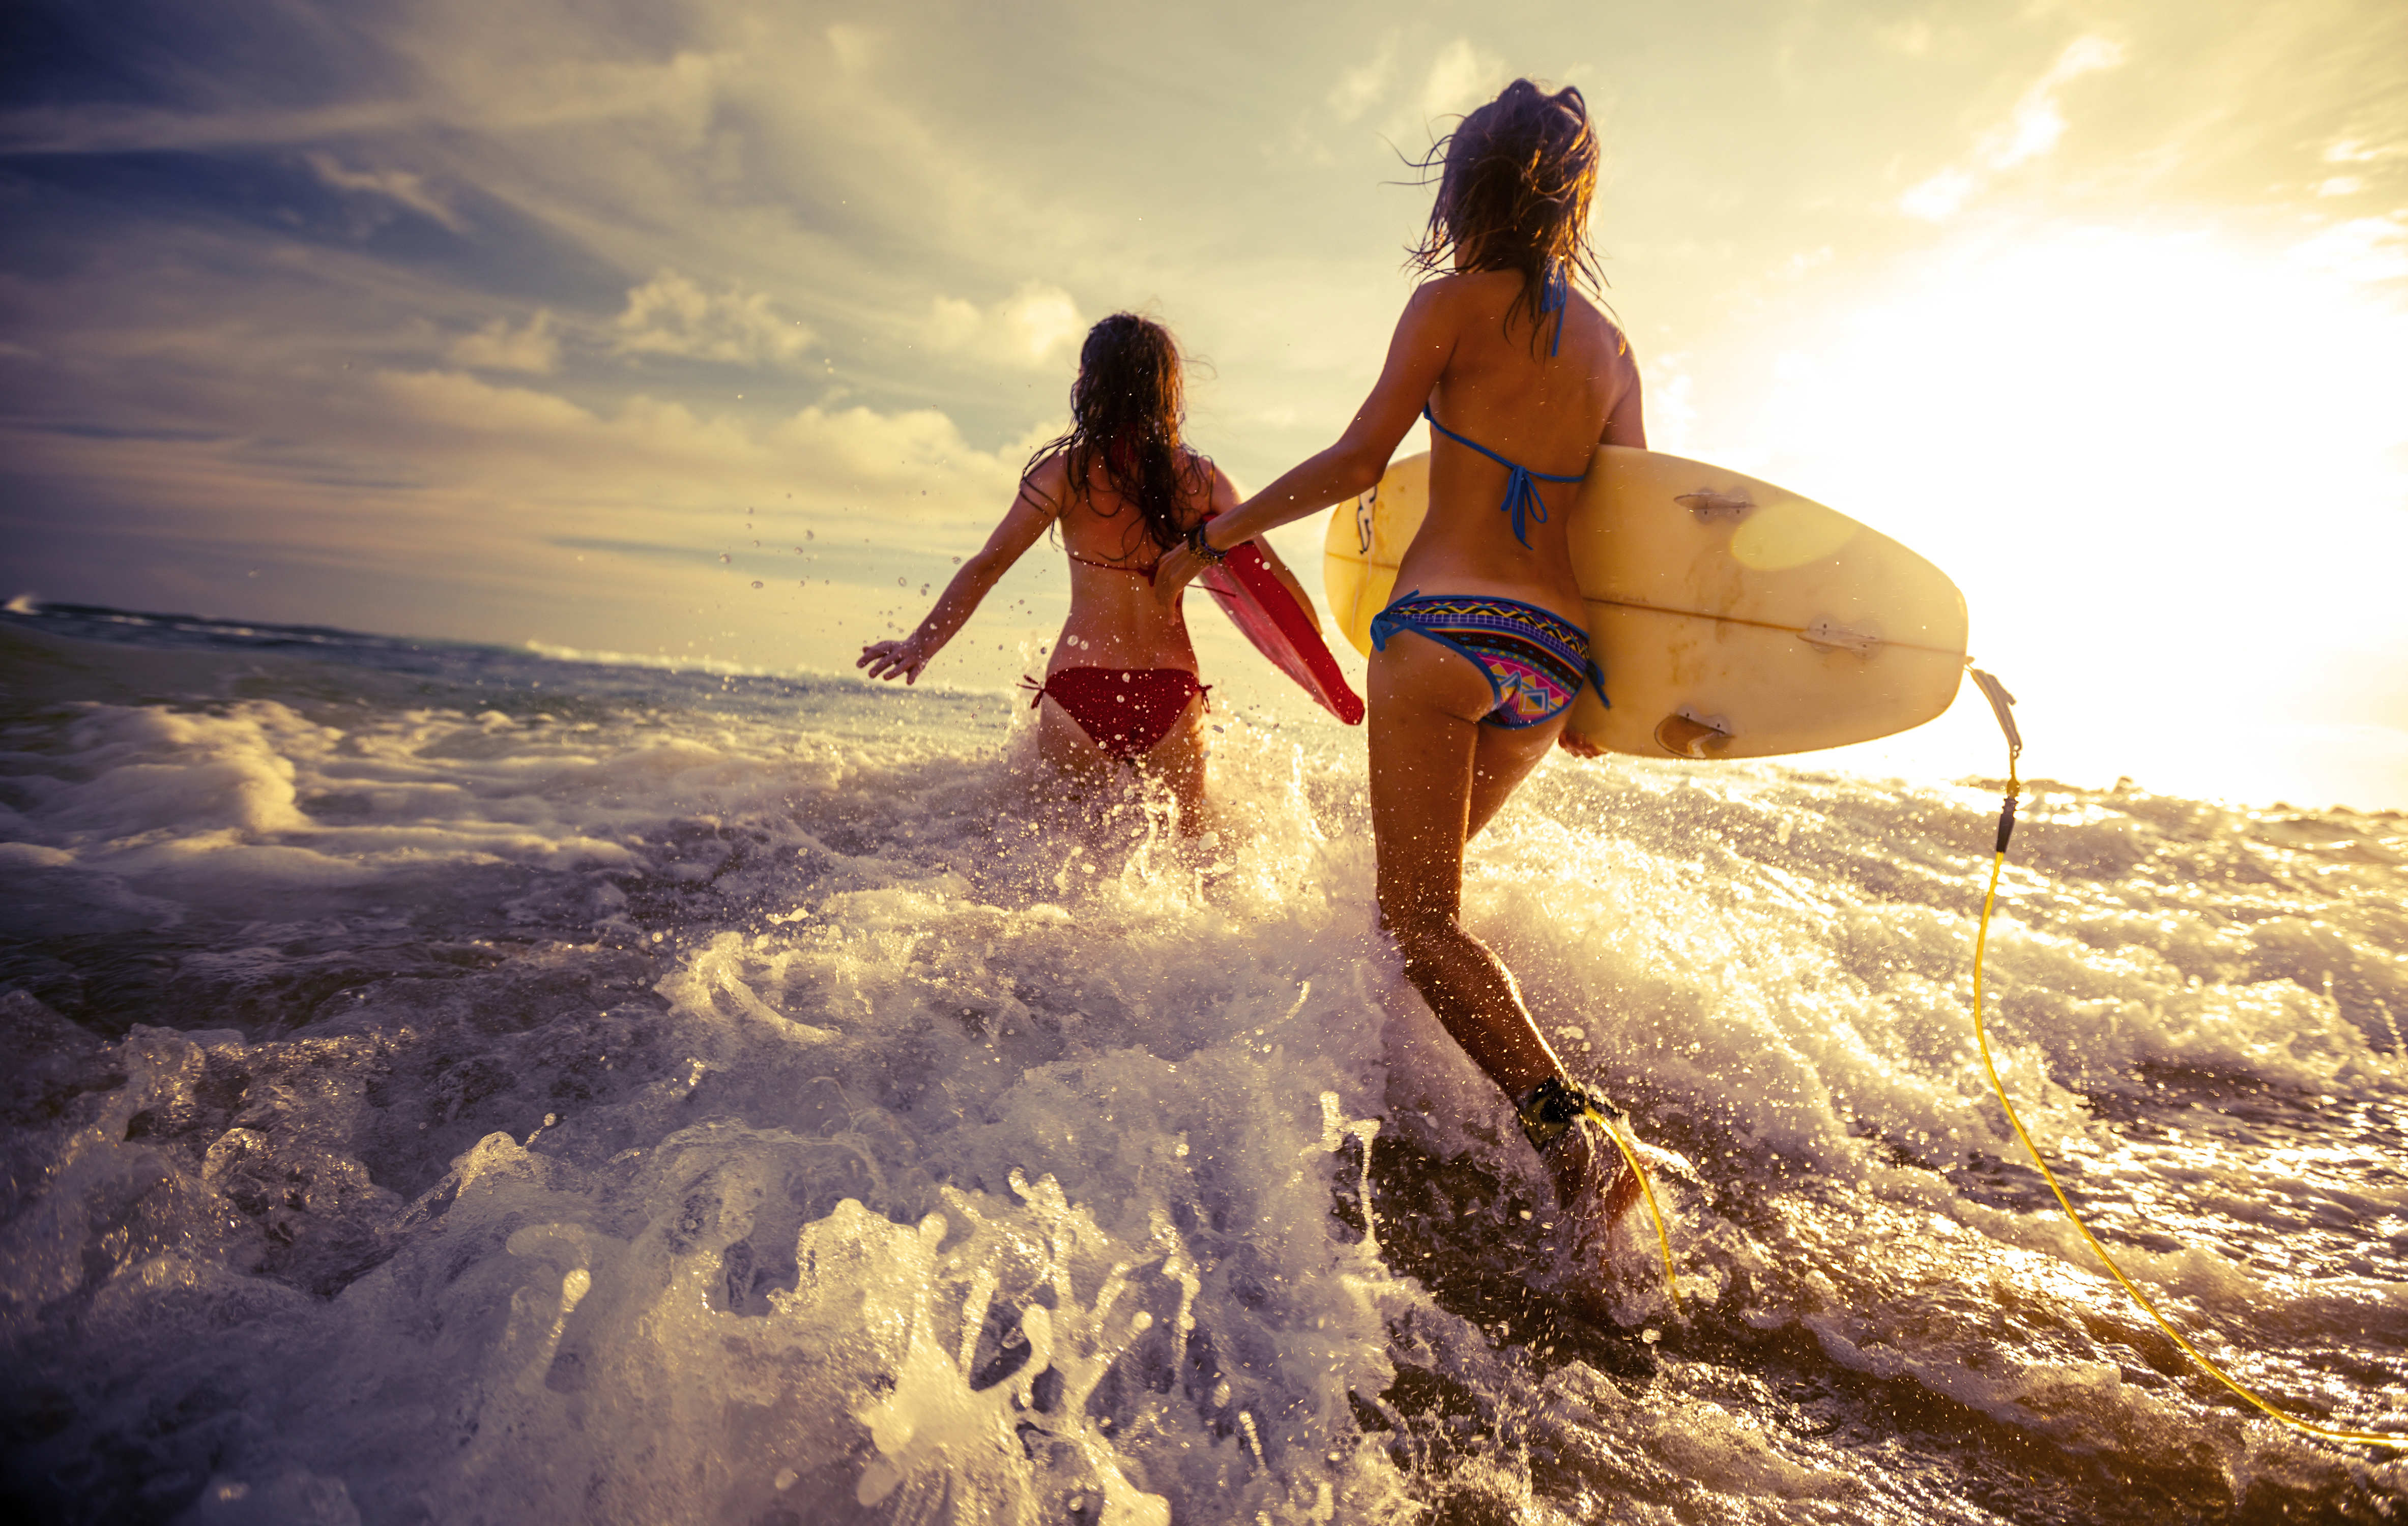 Women Surfers